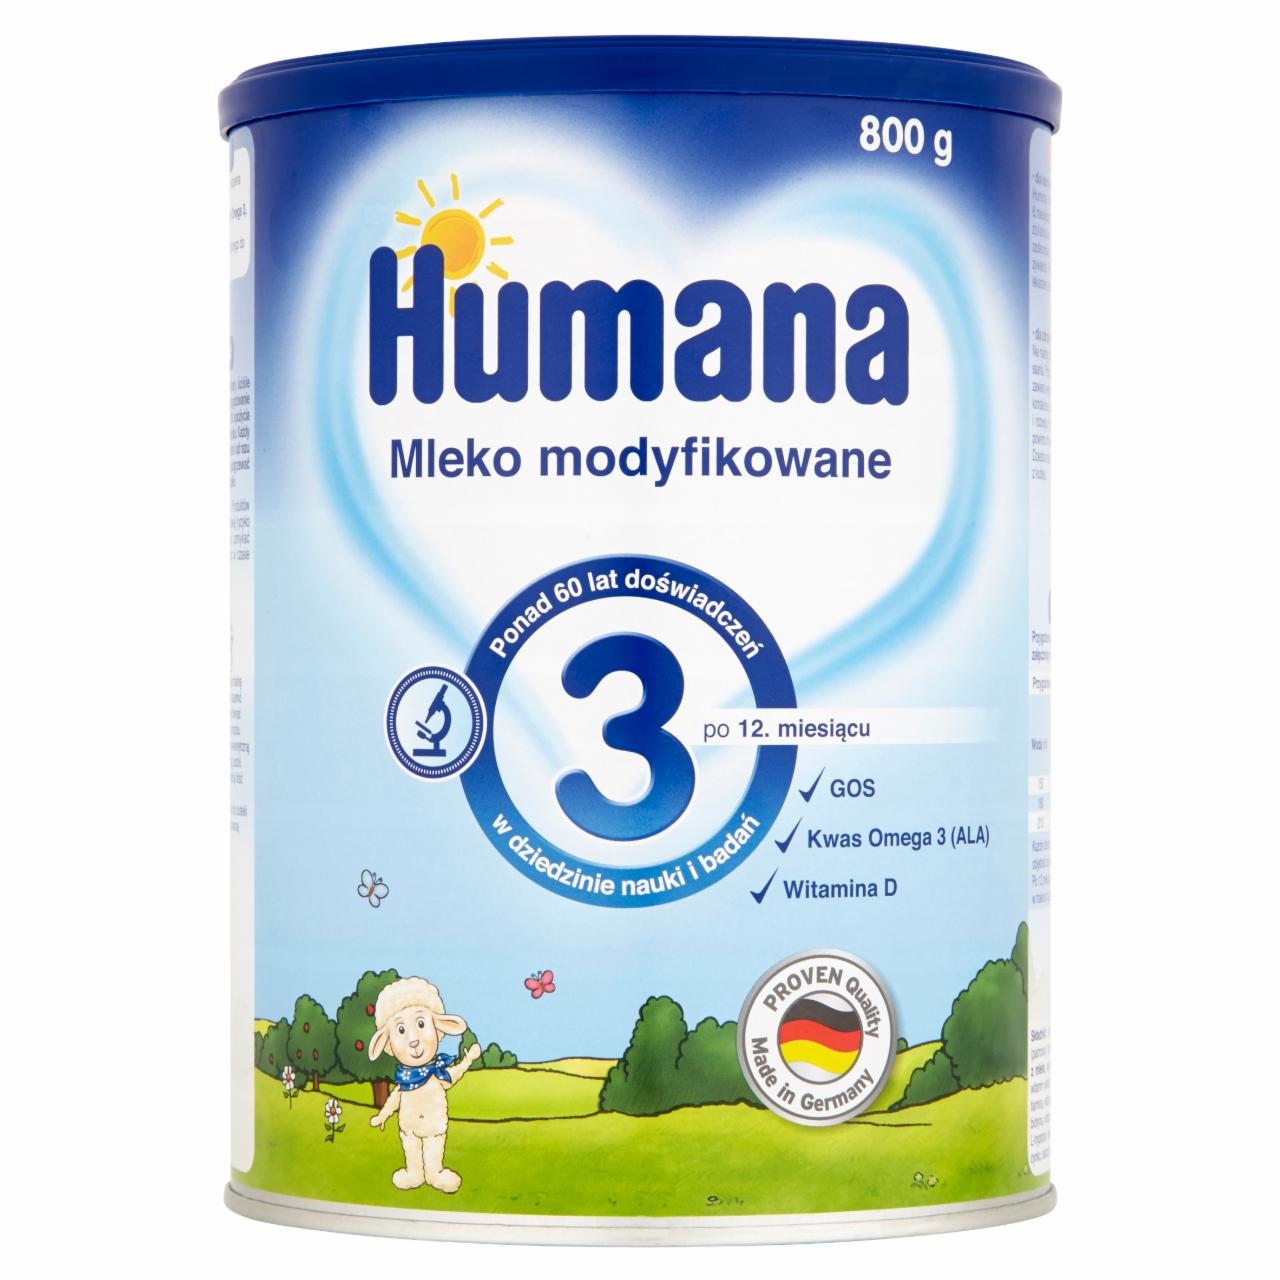 Zdjęcia - Humana 3 Mleko modyfikowane po 12. miesiącu 800 g